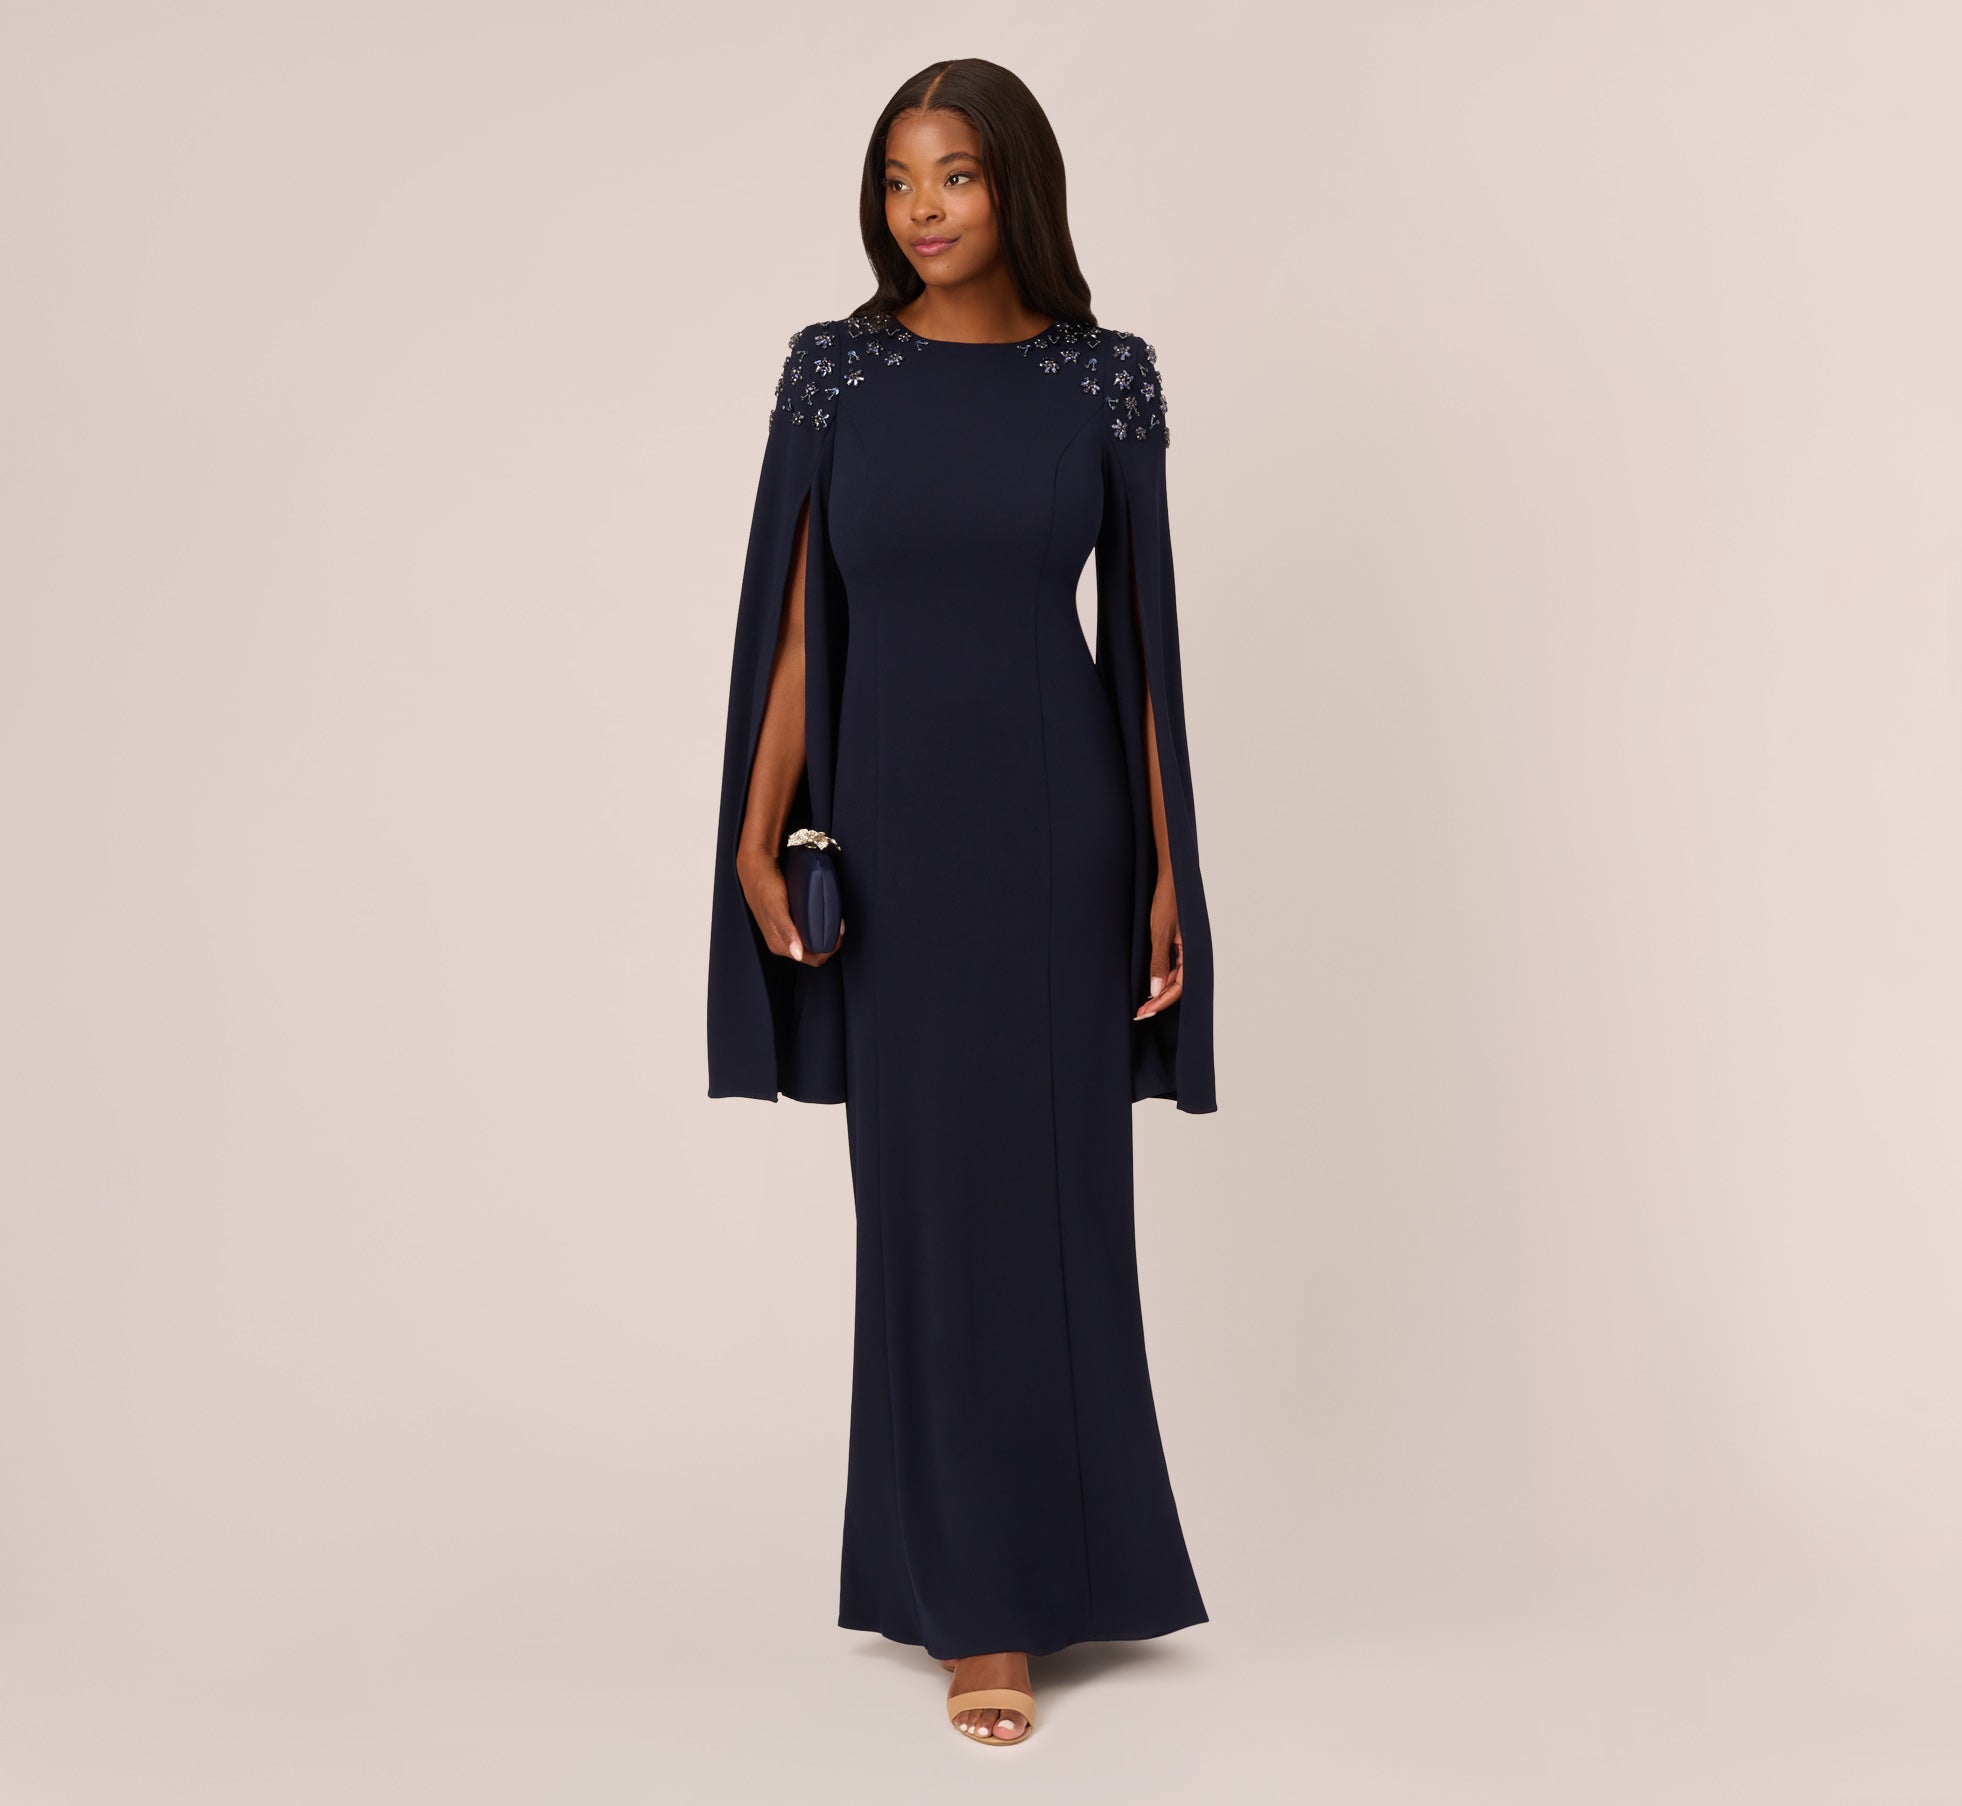 Black Velvet Embellished Ball Gown with Drape Sleeves – Trendy Divva